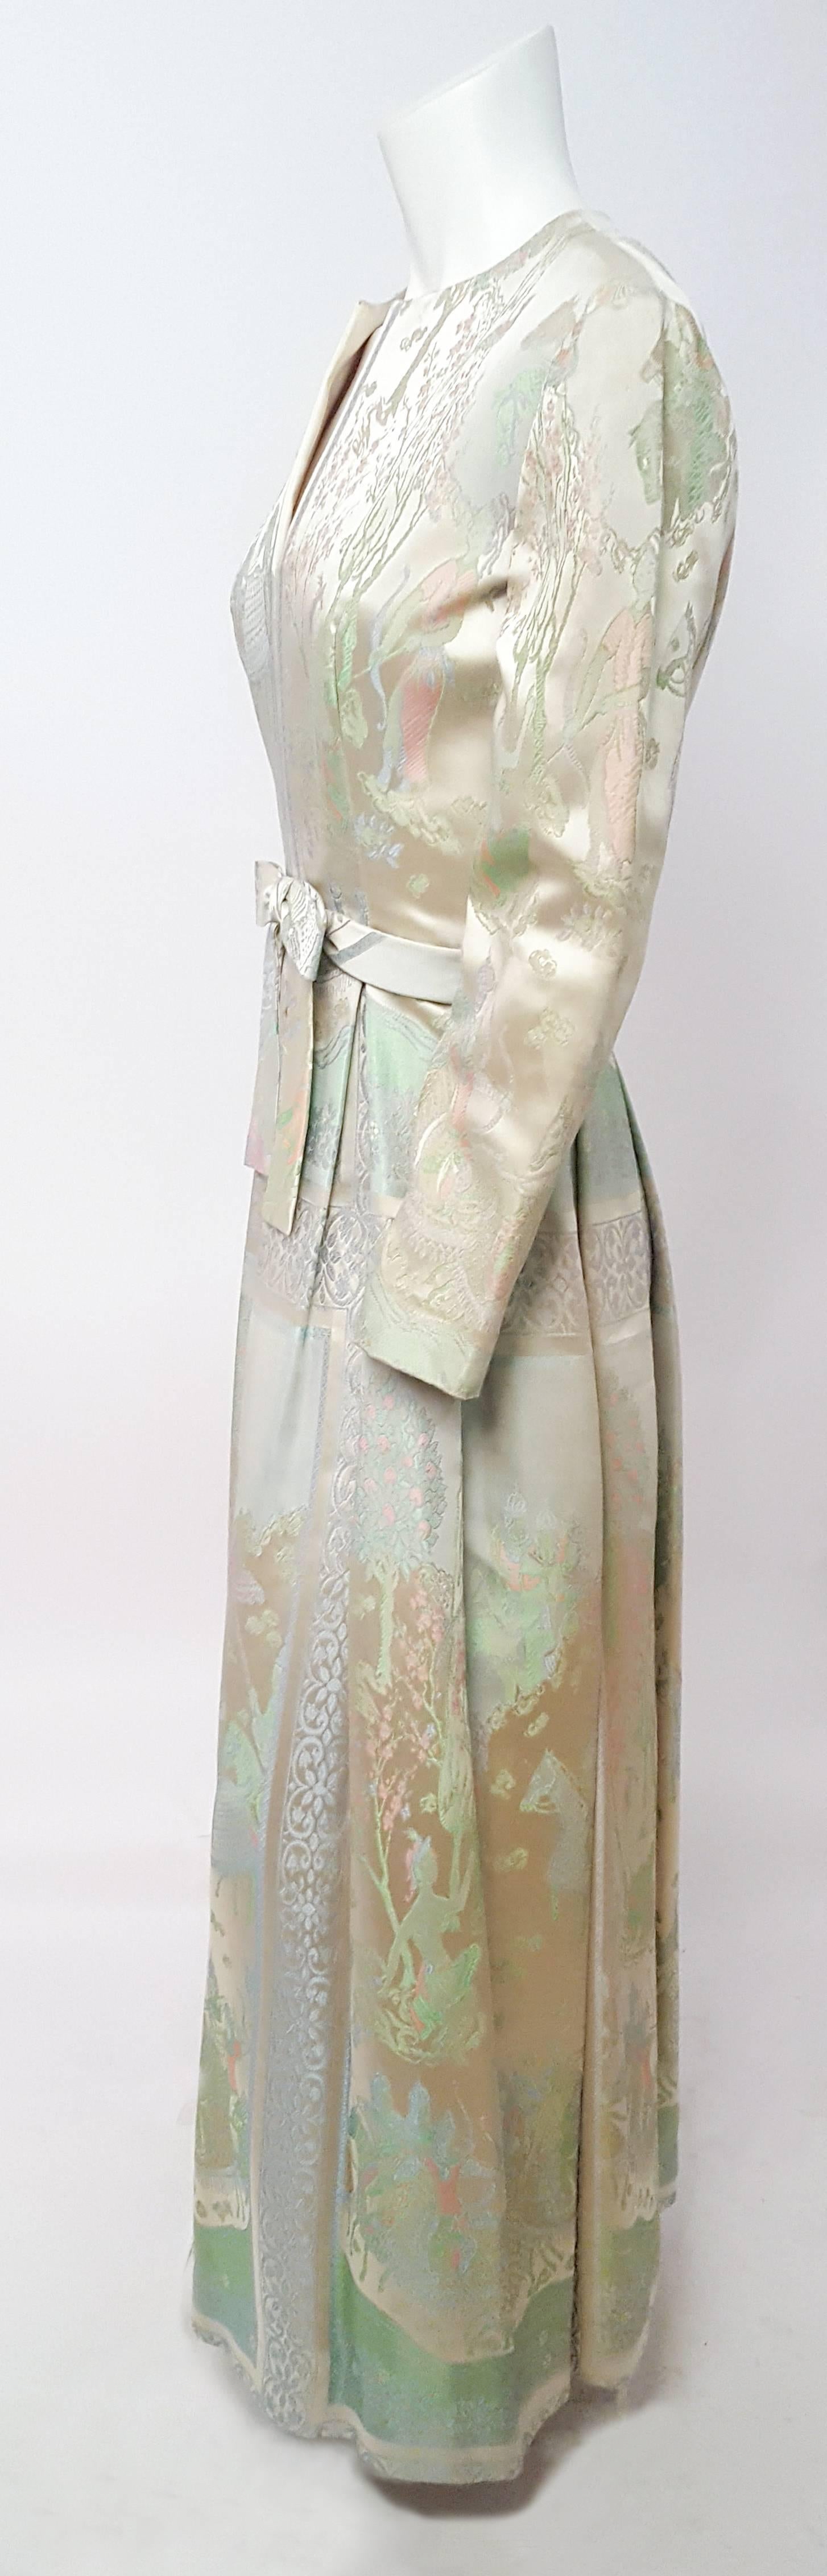 60s Siam Motif Brocade Gown. Back zip closure.